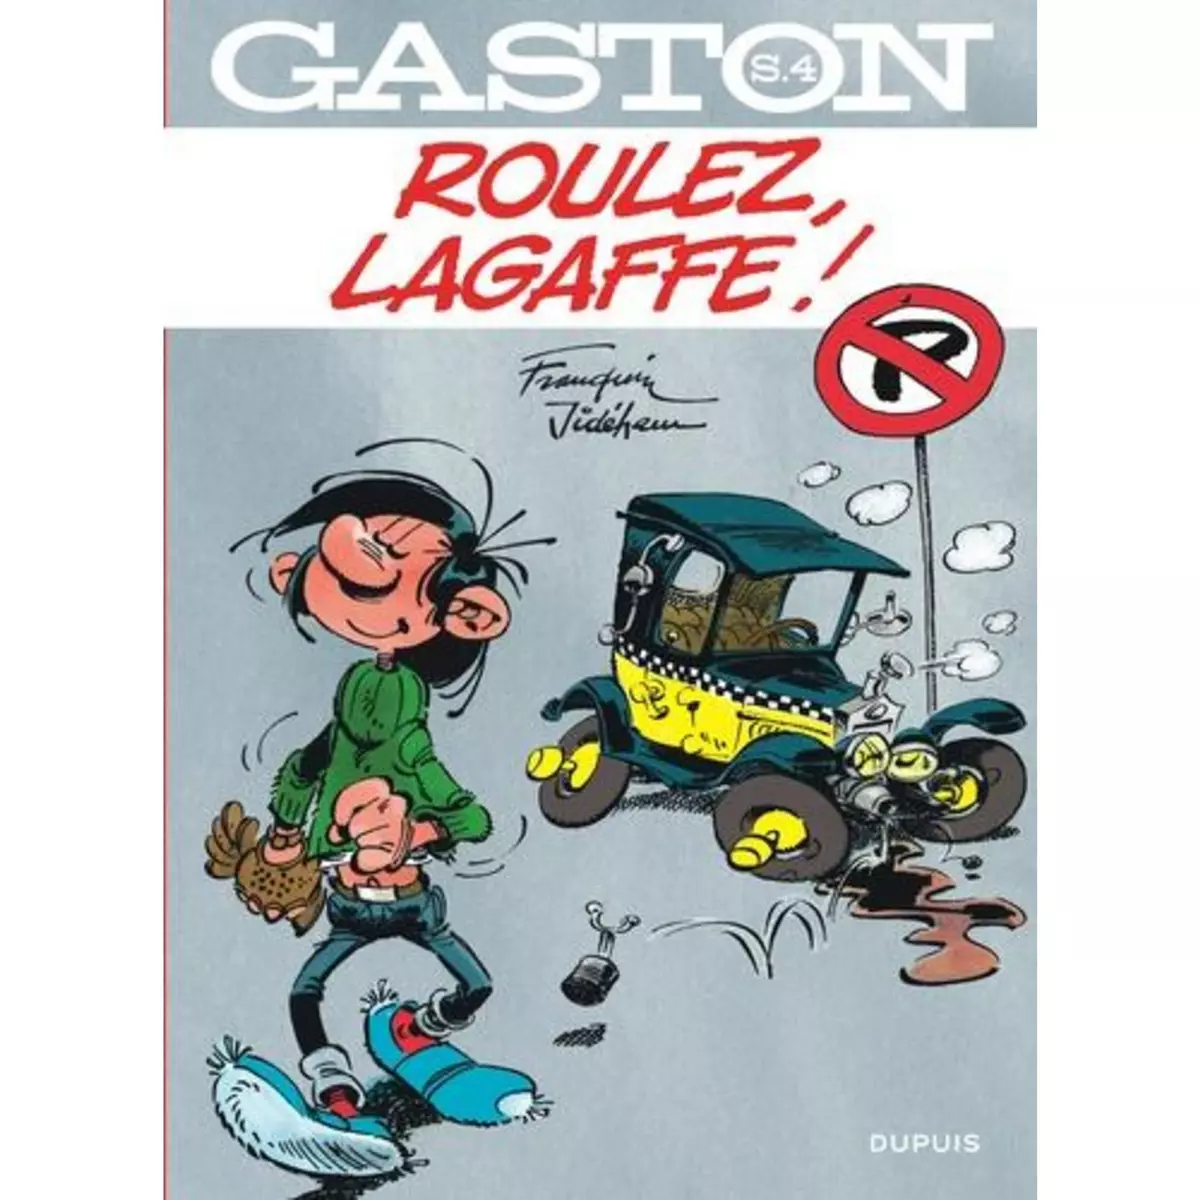  GASTON TOME 4 : ROULEZ, LAGAFFE !, Franquin André